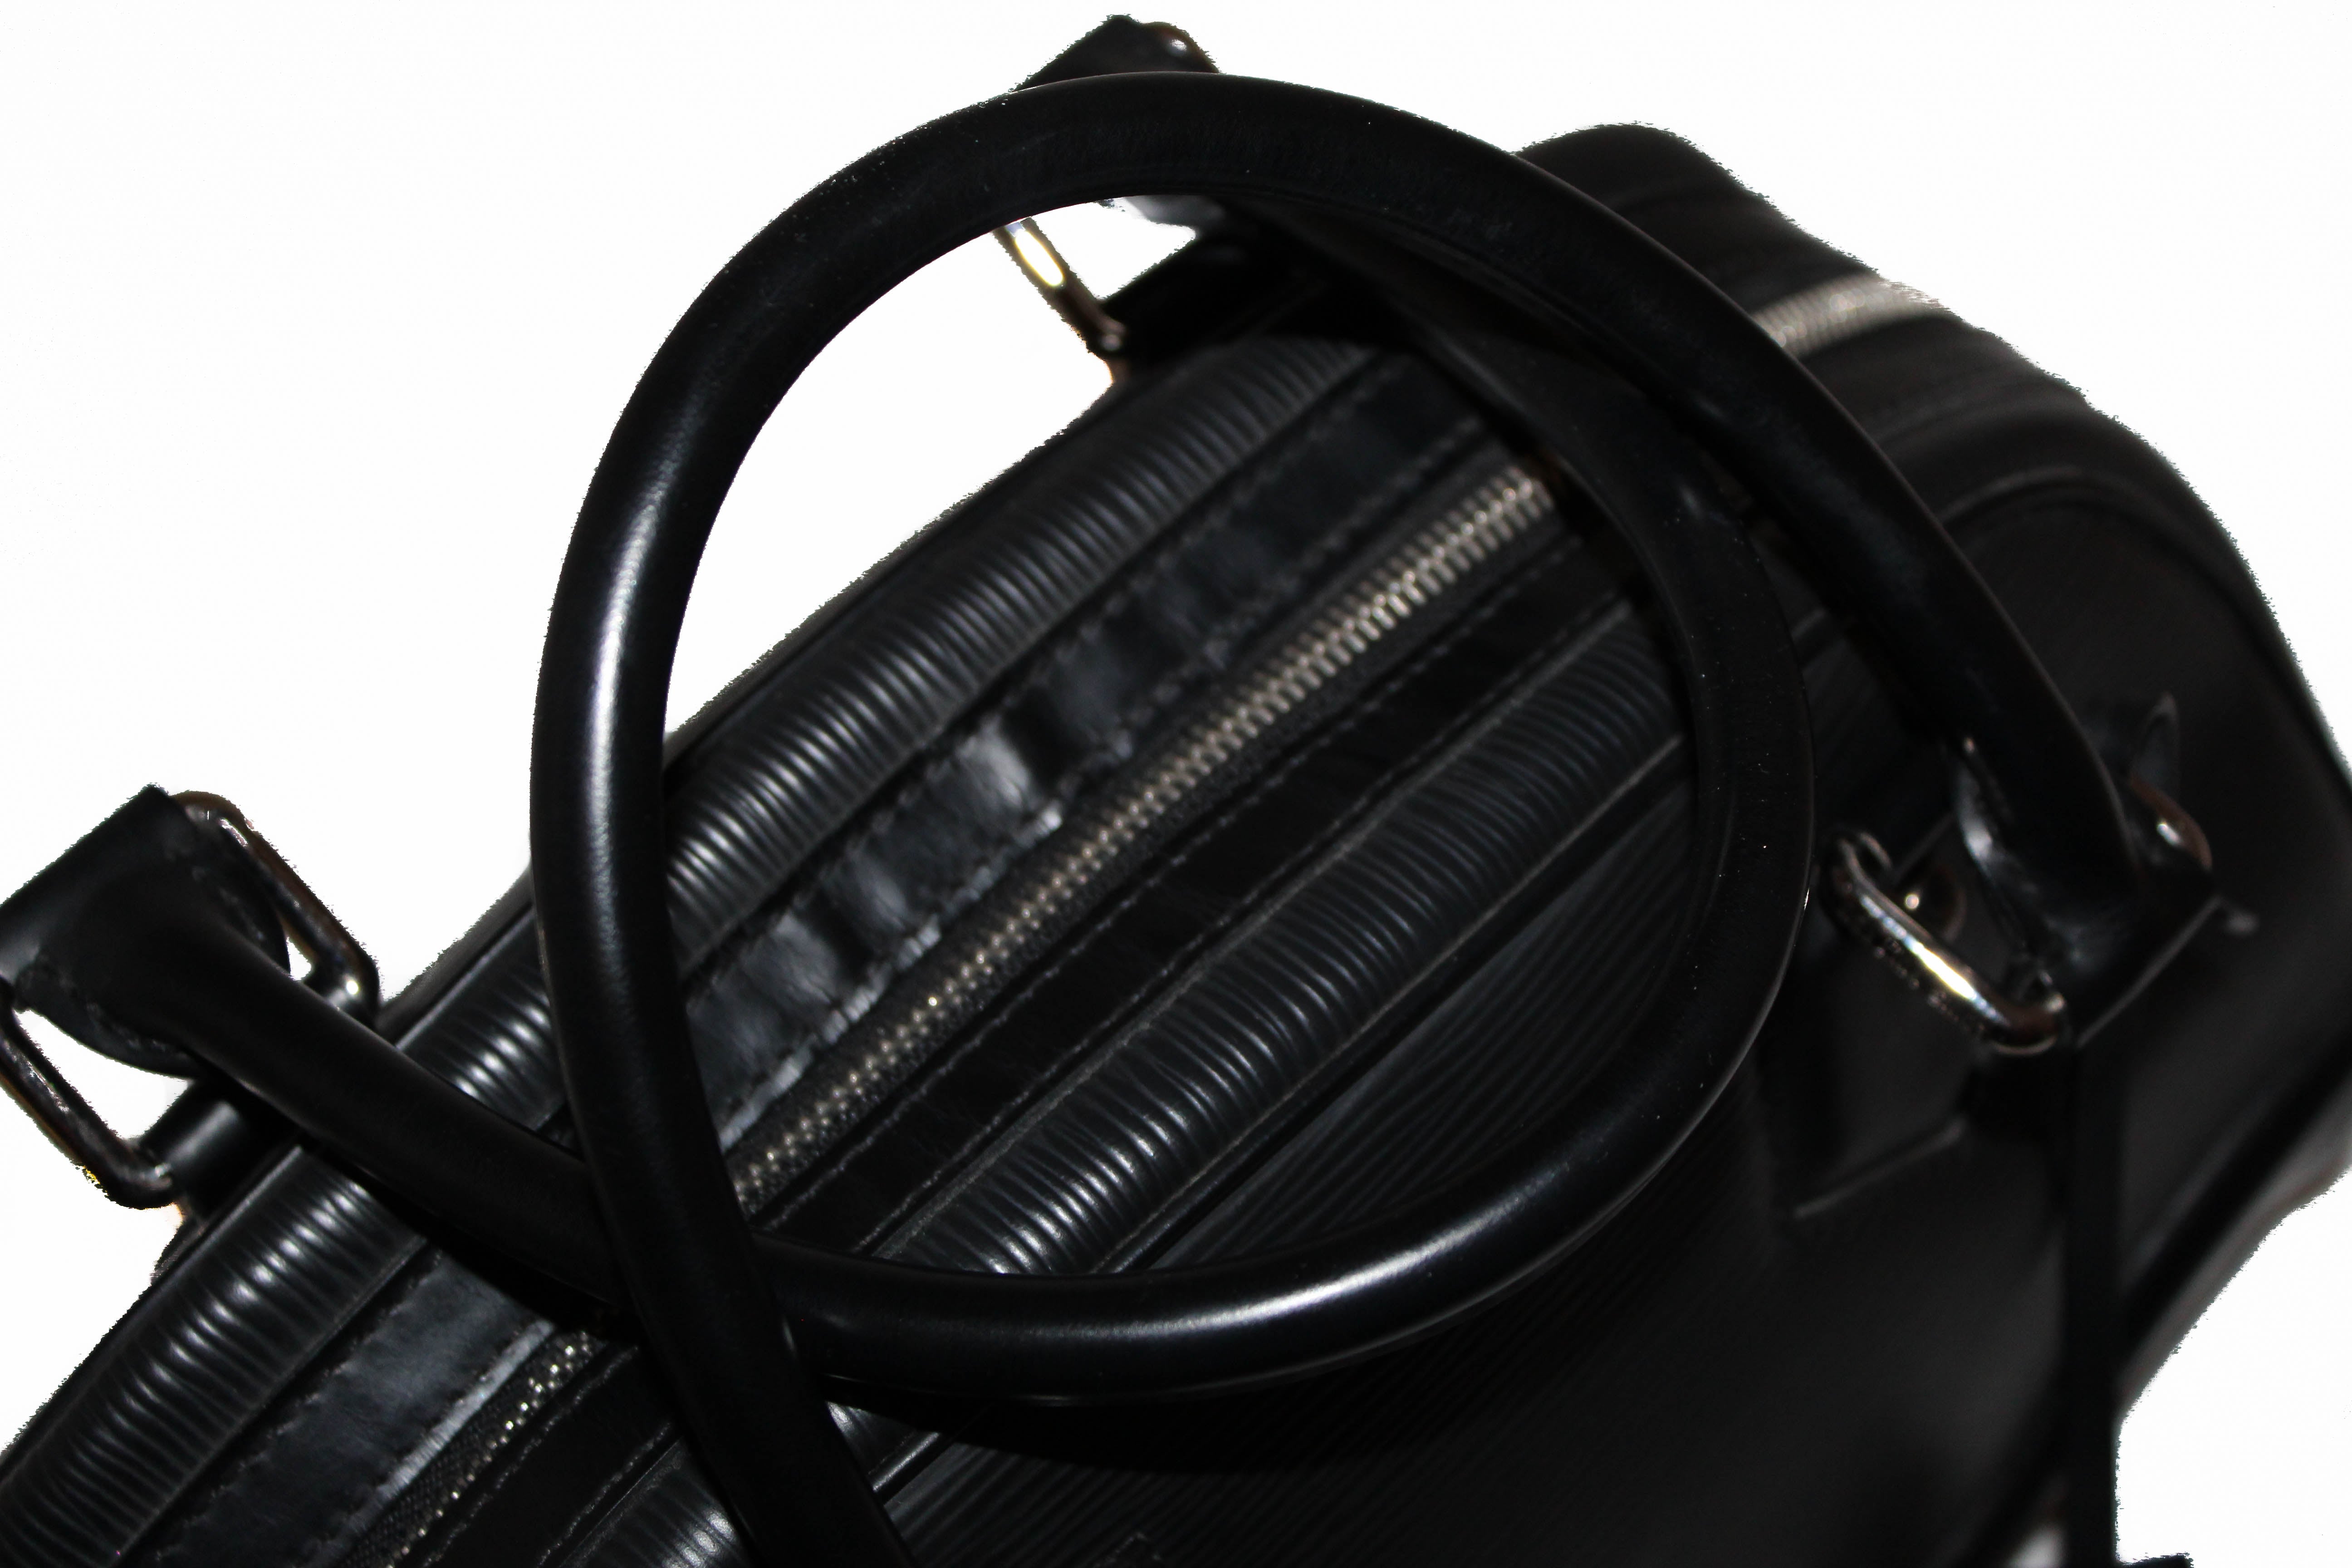 Authentic Louis Vuitton Black Epi Leather Montaigne PM Bowling Handbag Bag